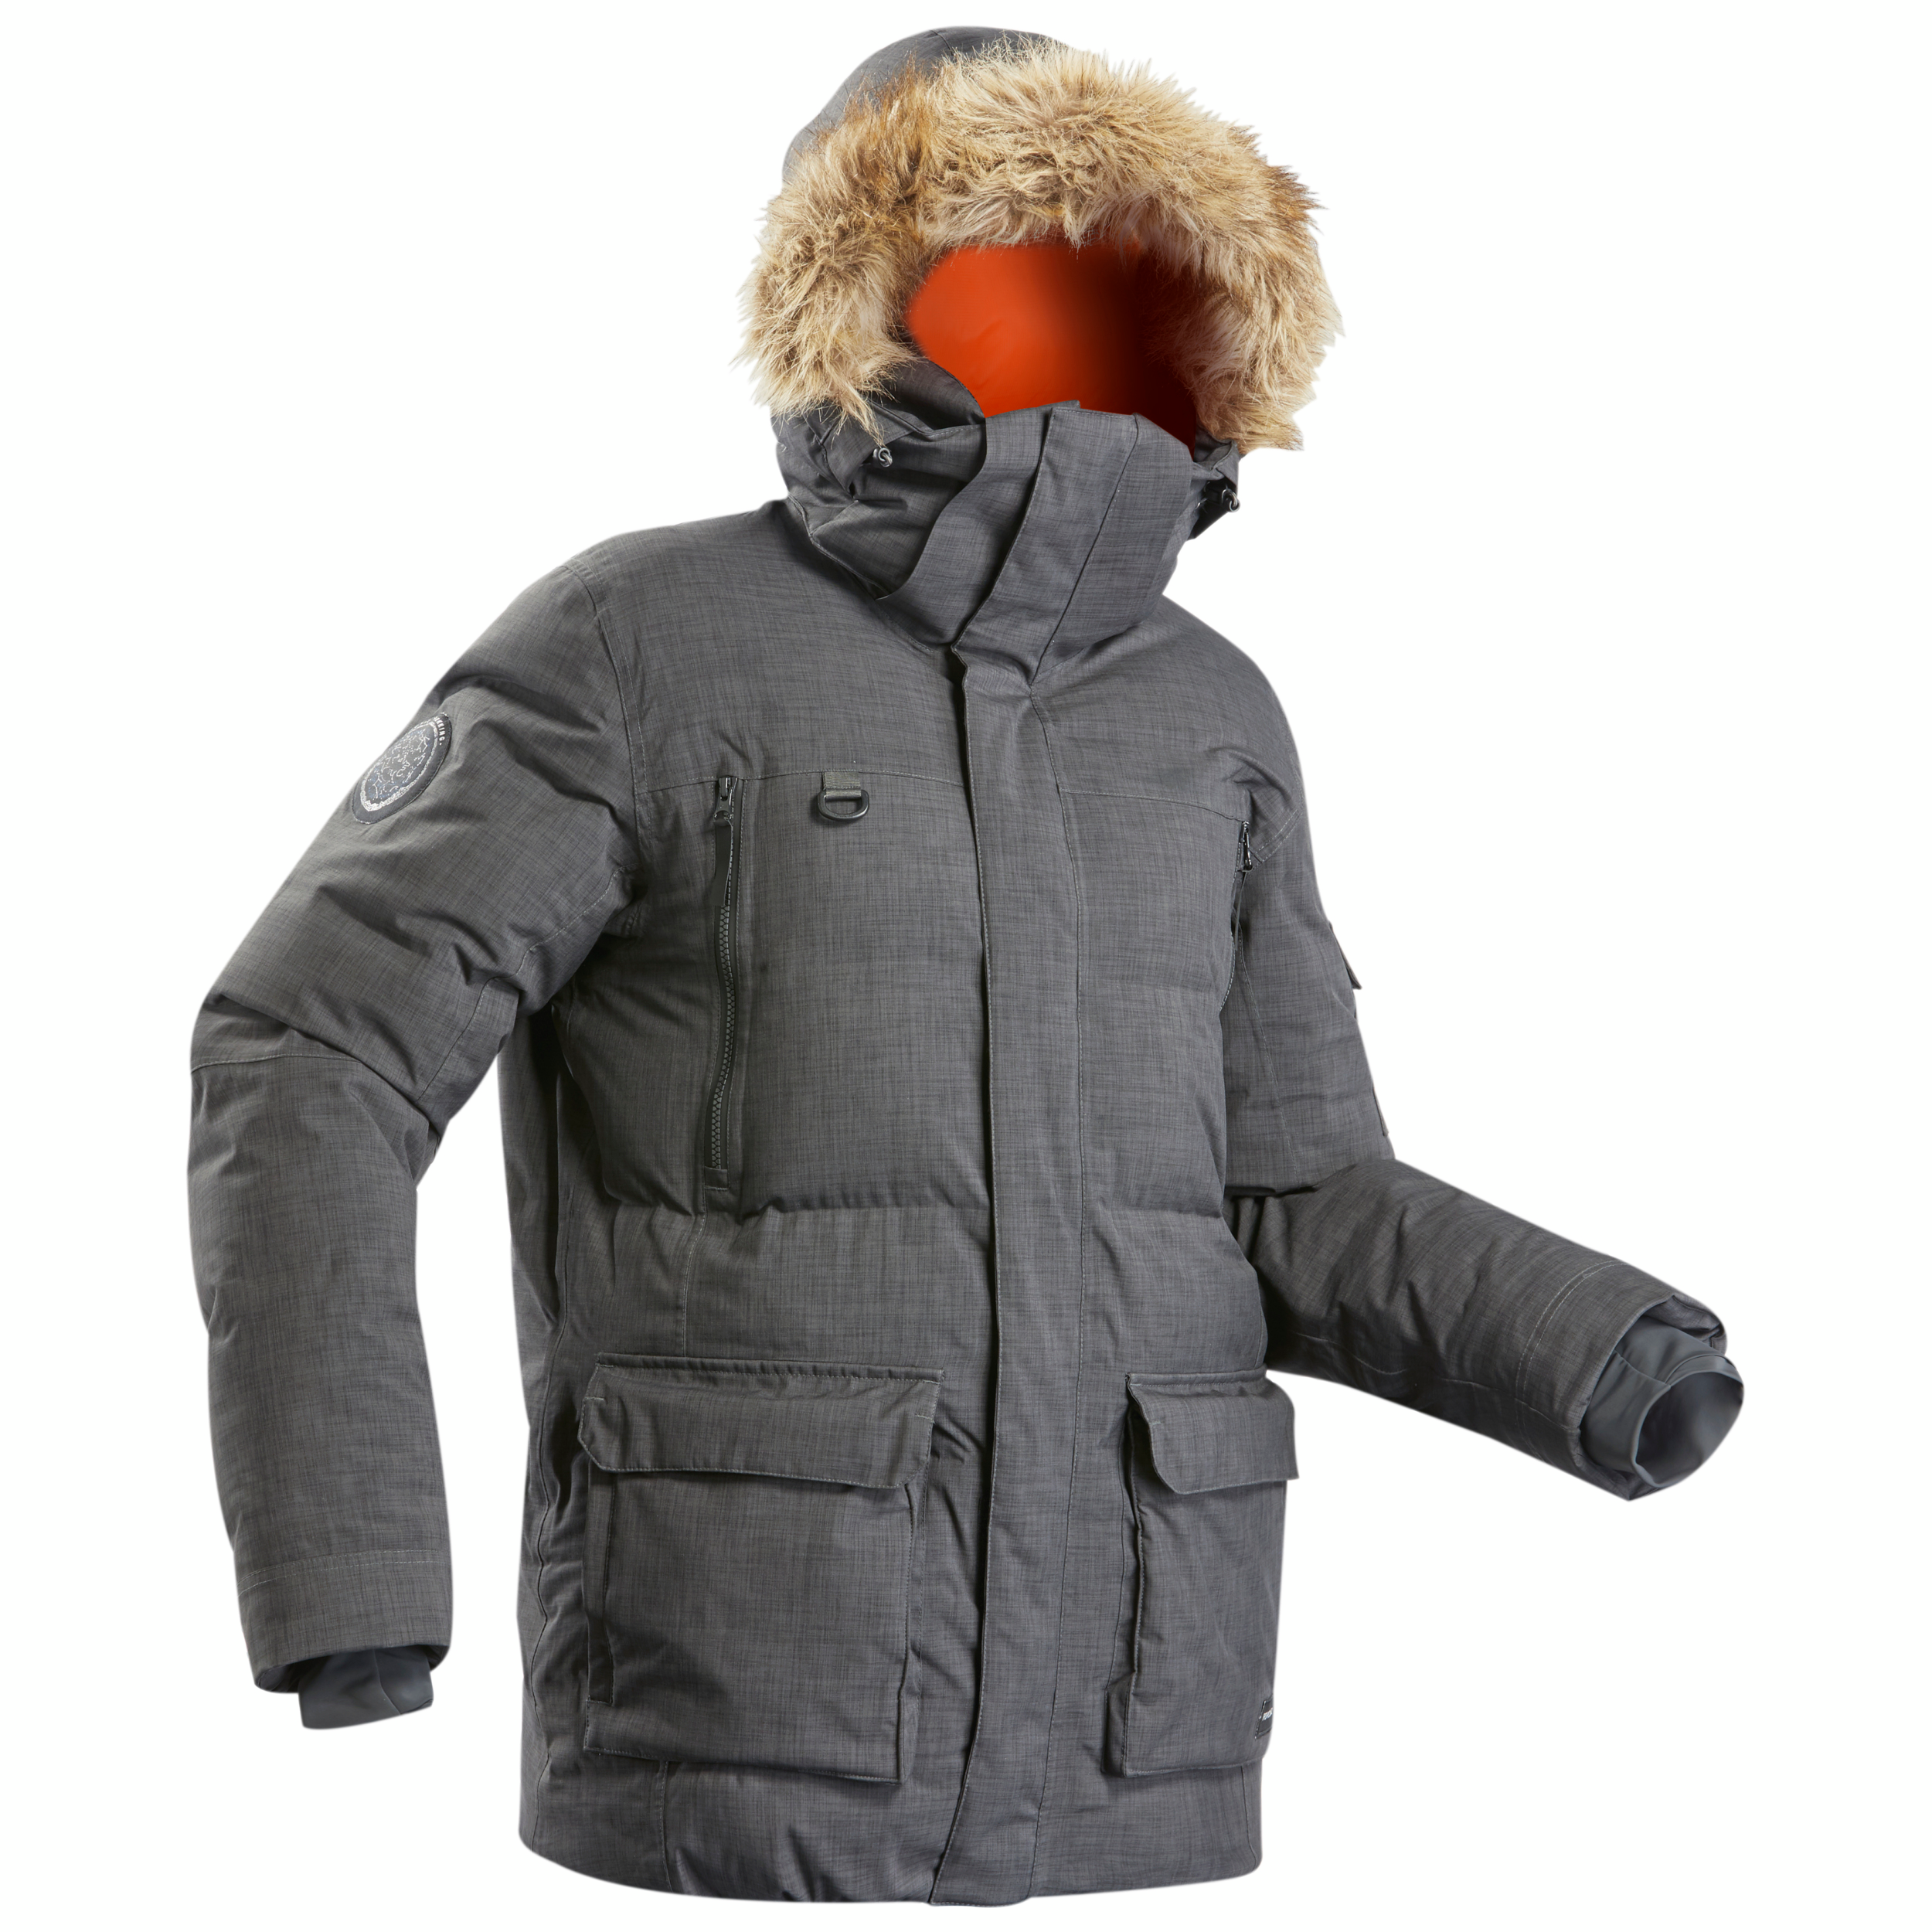 Manteau d'hiver homme – SH 900 noir